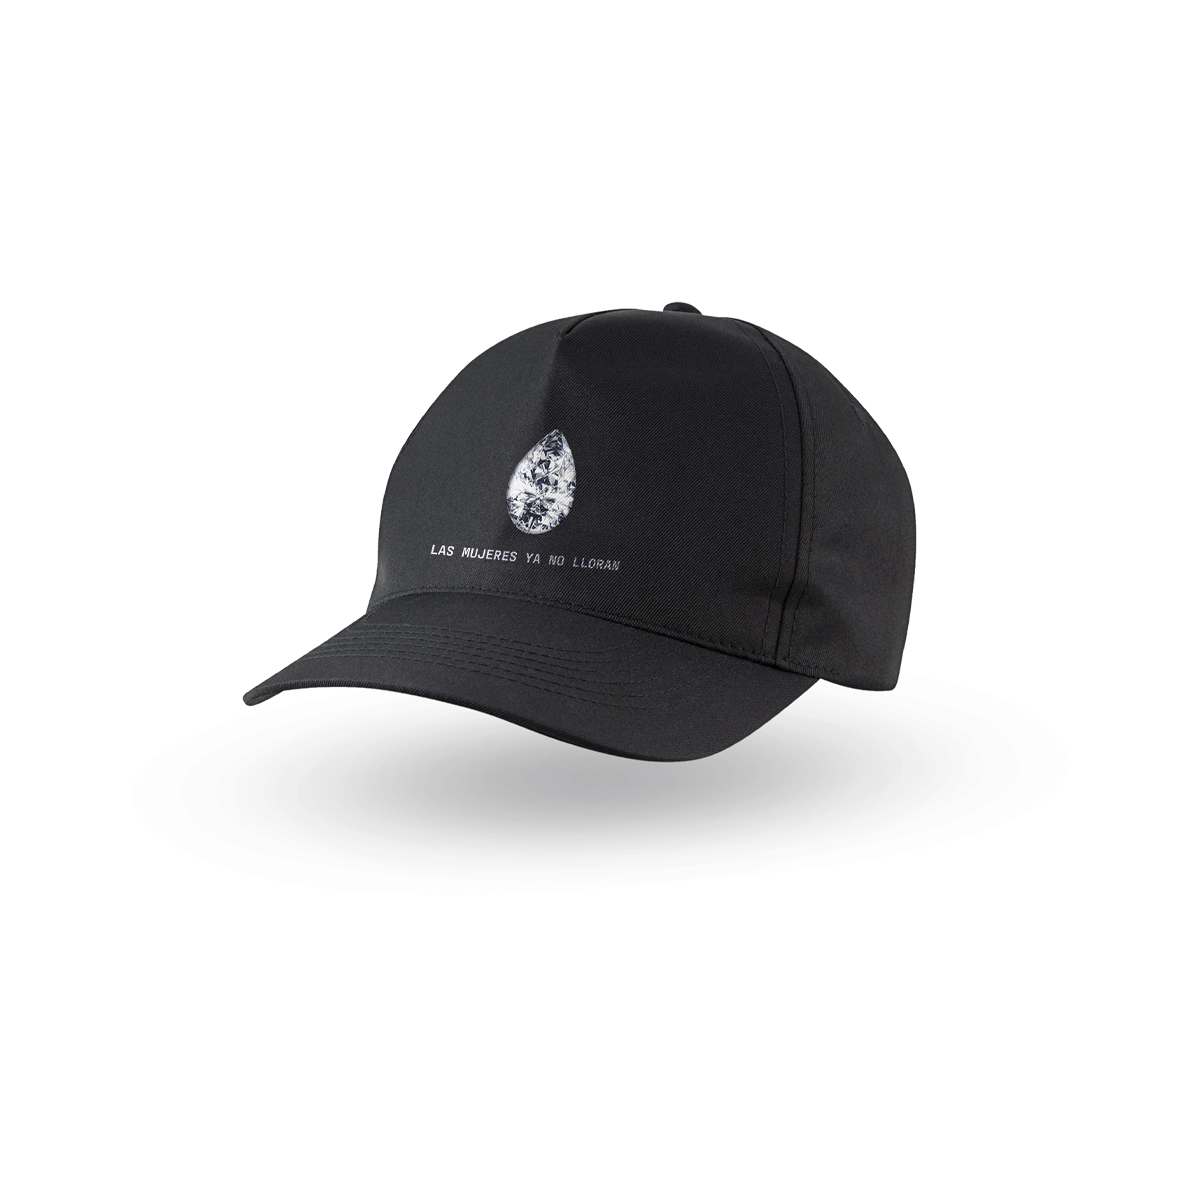 FTP Diamond Dealer 5 Panel Hat Black